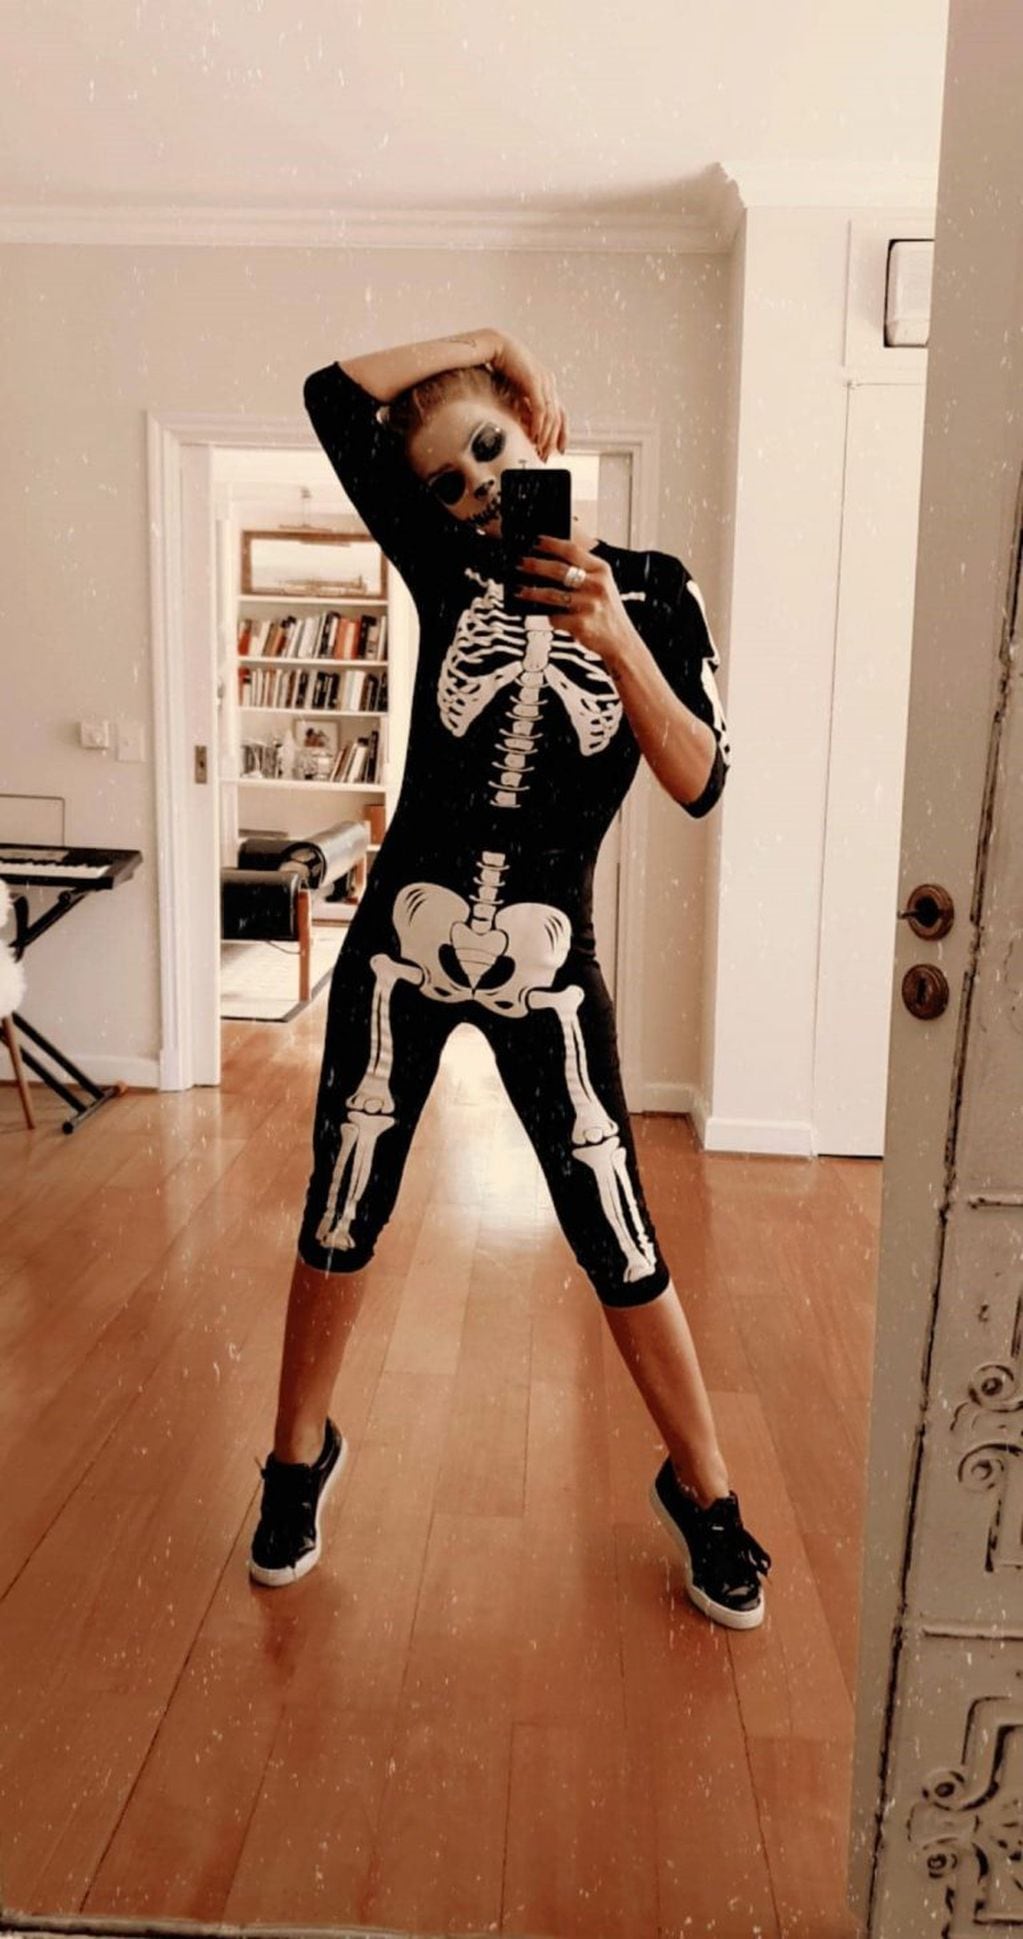 La China Suárez se disfrazó de esqueleto para Halloween y lo mostró en Instagram (Foto: Instagram/ @sangrejaponesa)